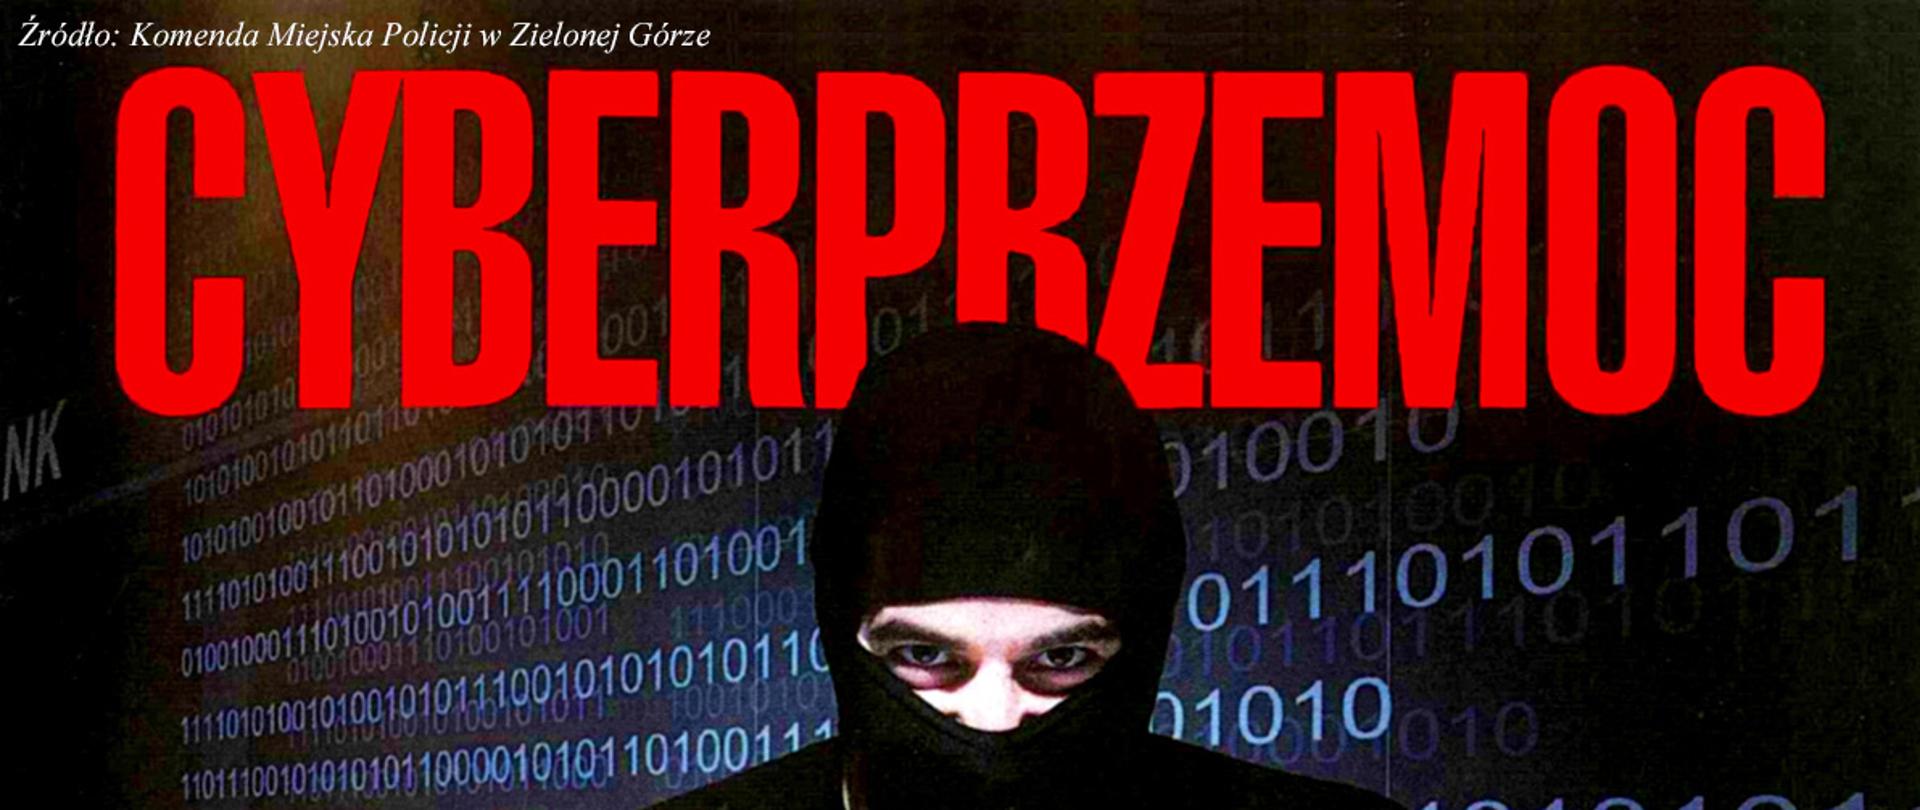 Grafika przedstawiająca zamaskowanego człowieka siedzącego przed laptopem. W tle widoczny jest kod zero jedynkowy. Na górze duży, czerwony napis cyberprzemoc. W lewym górnym rogu znajduje się następująca informacja - źródło: Komenda Miejska Policji w Zielonej Górze.